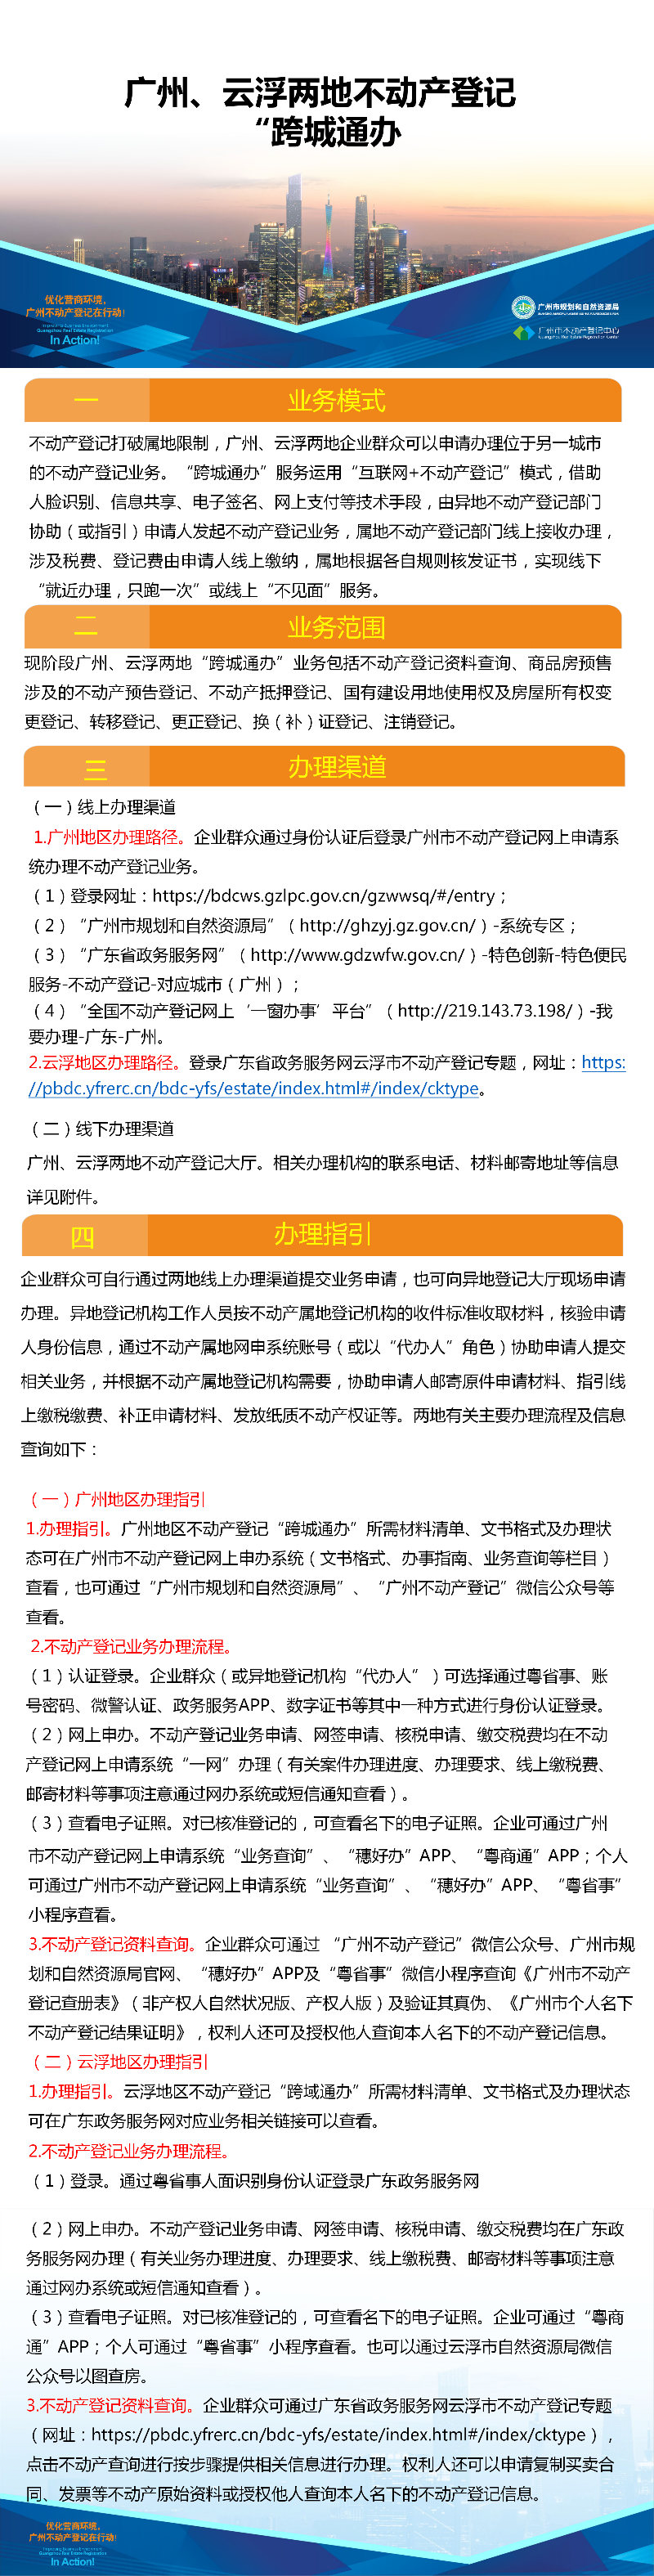 一图读懂-广州、云浮两地不动产登记业务“跨城通办”.png